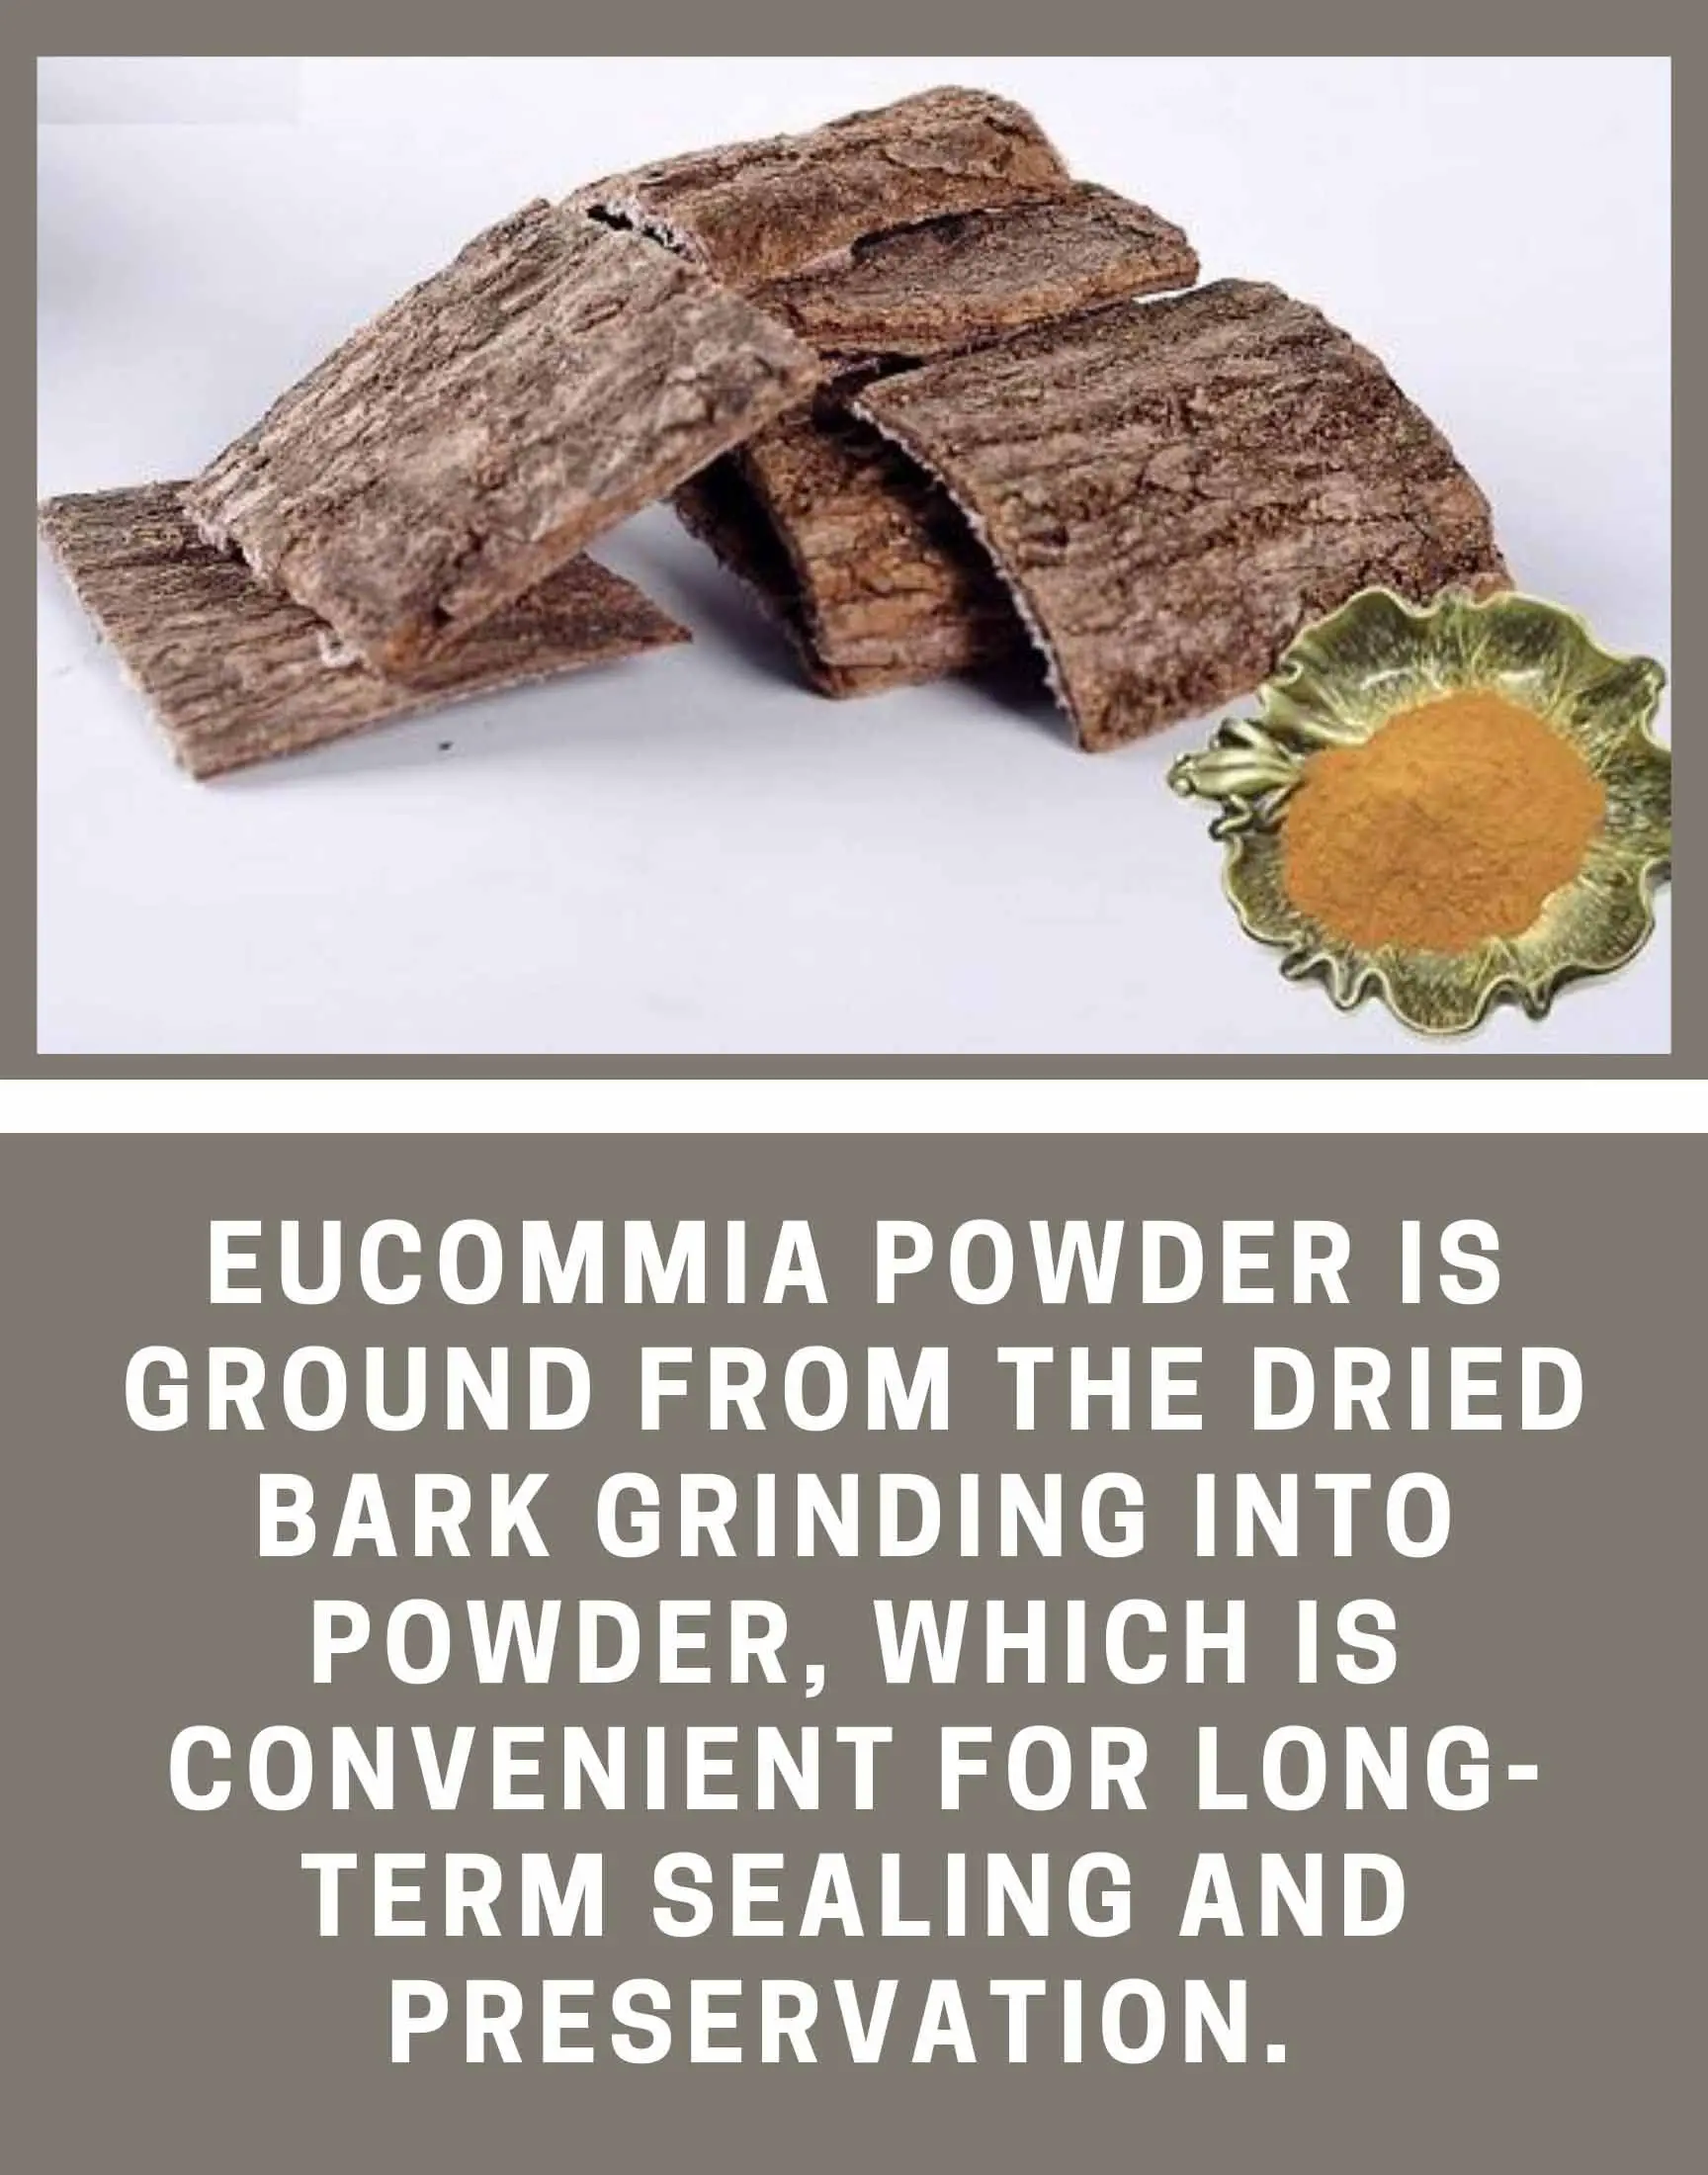 How to make eucommia powder